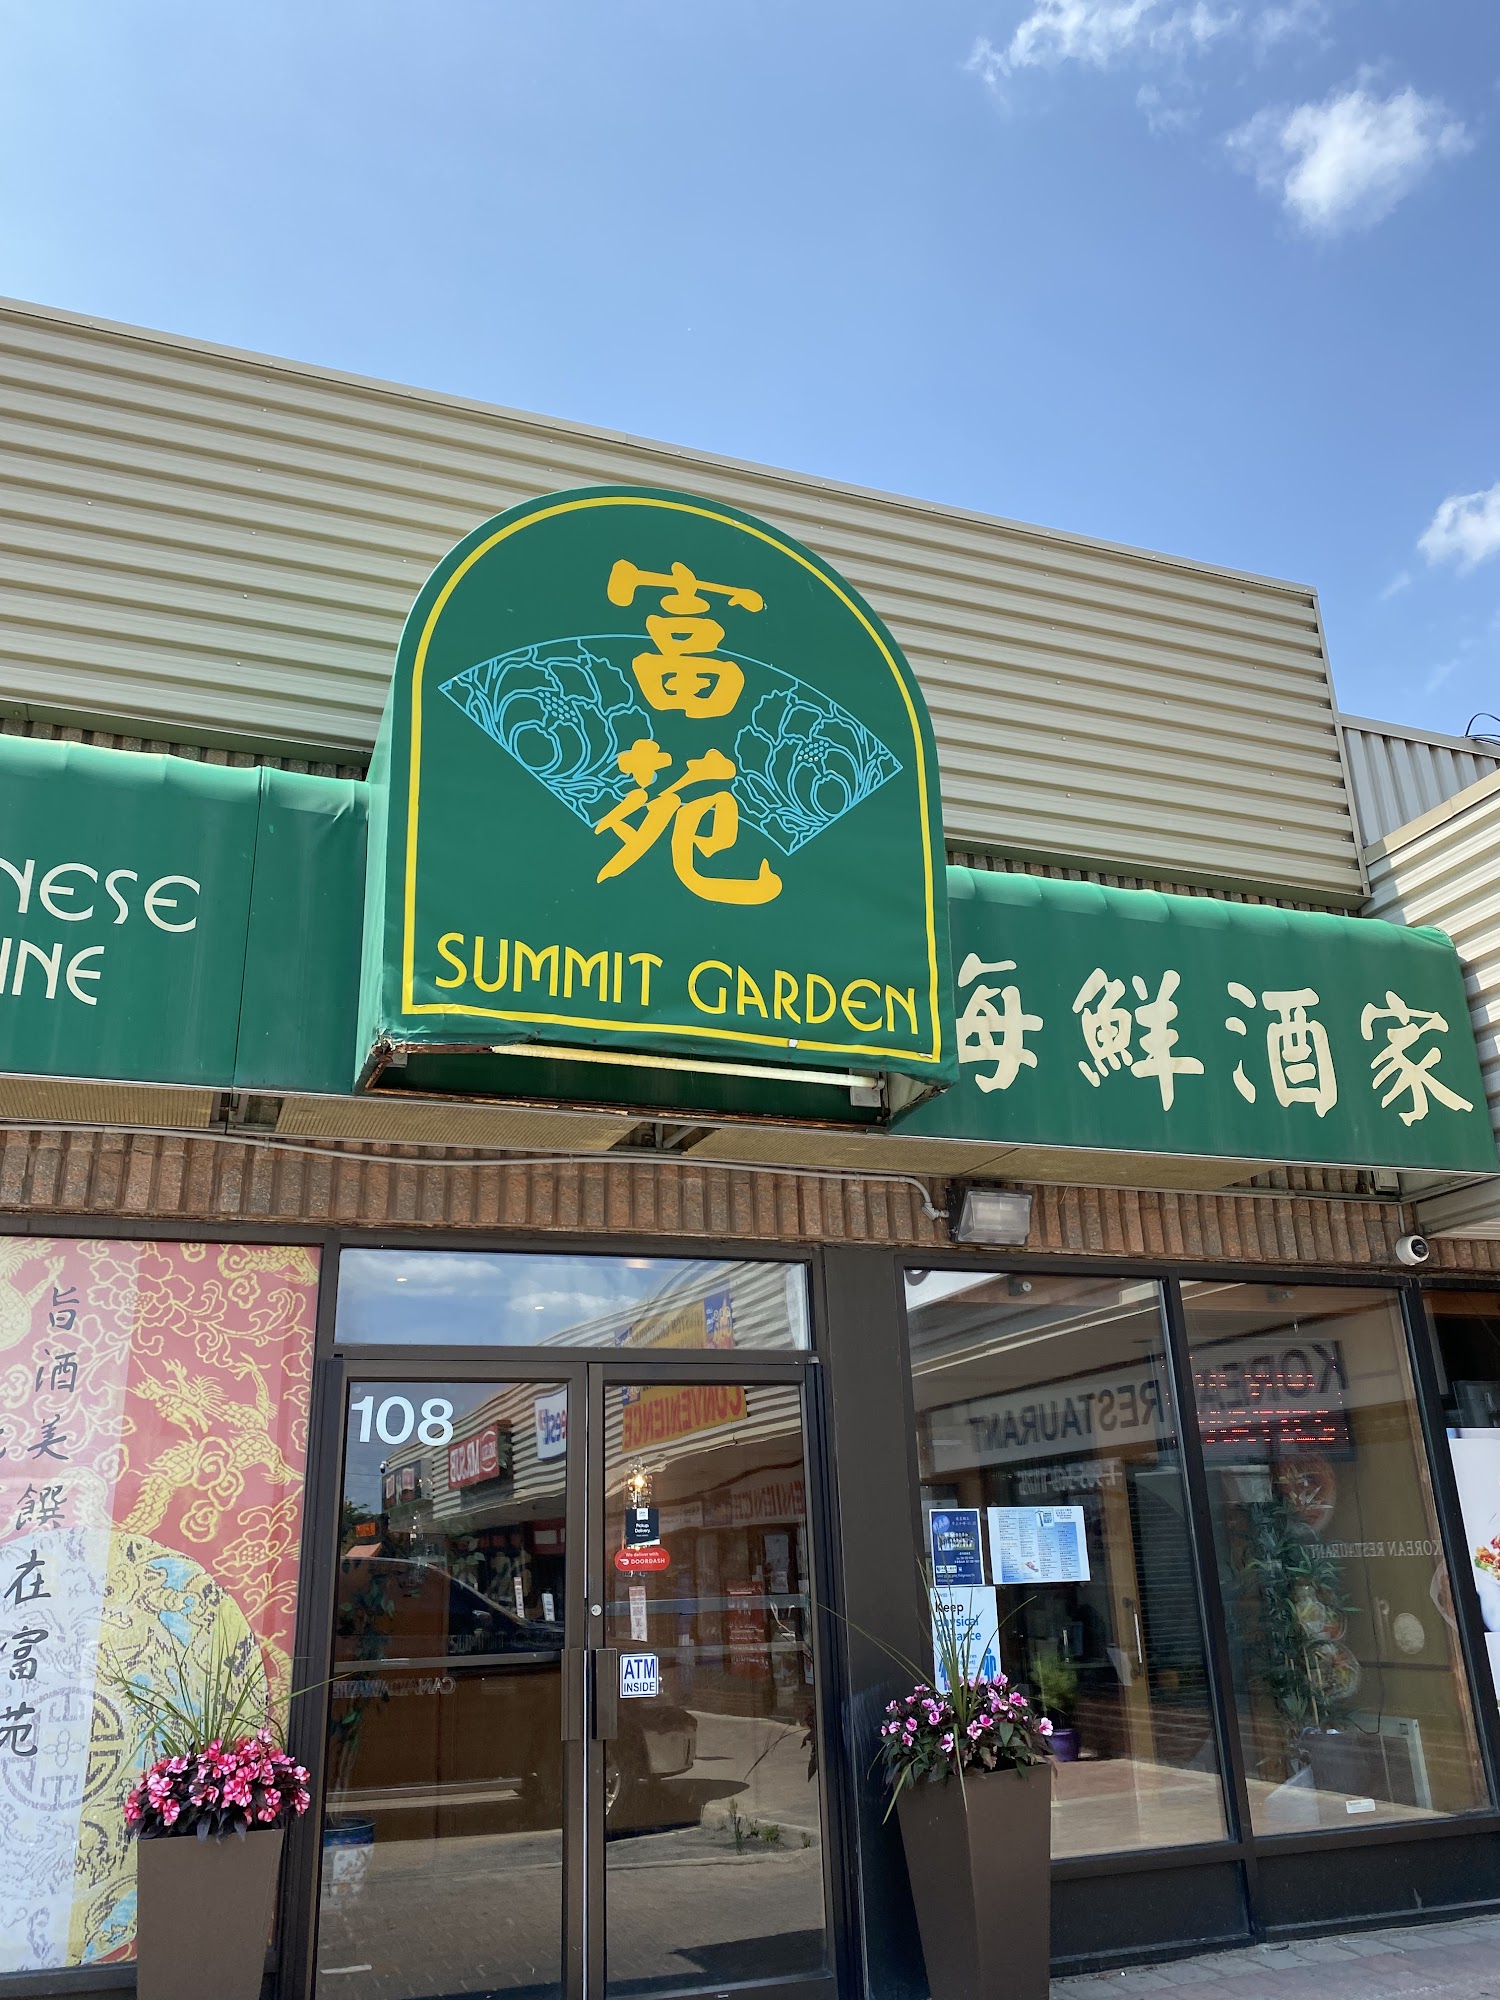 Summit Garden Chinese Cuisine